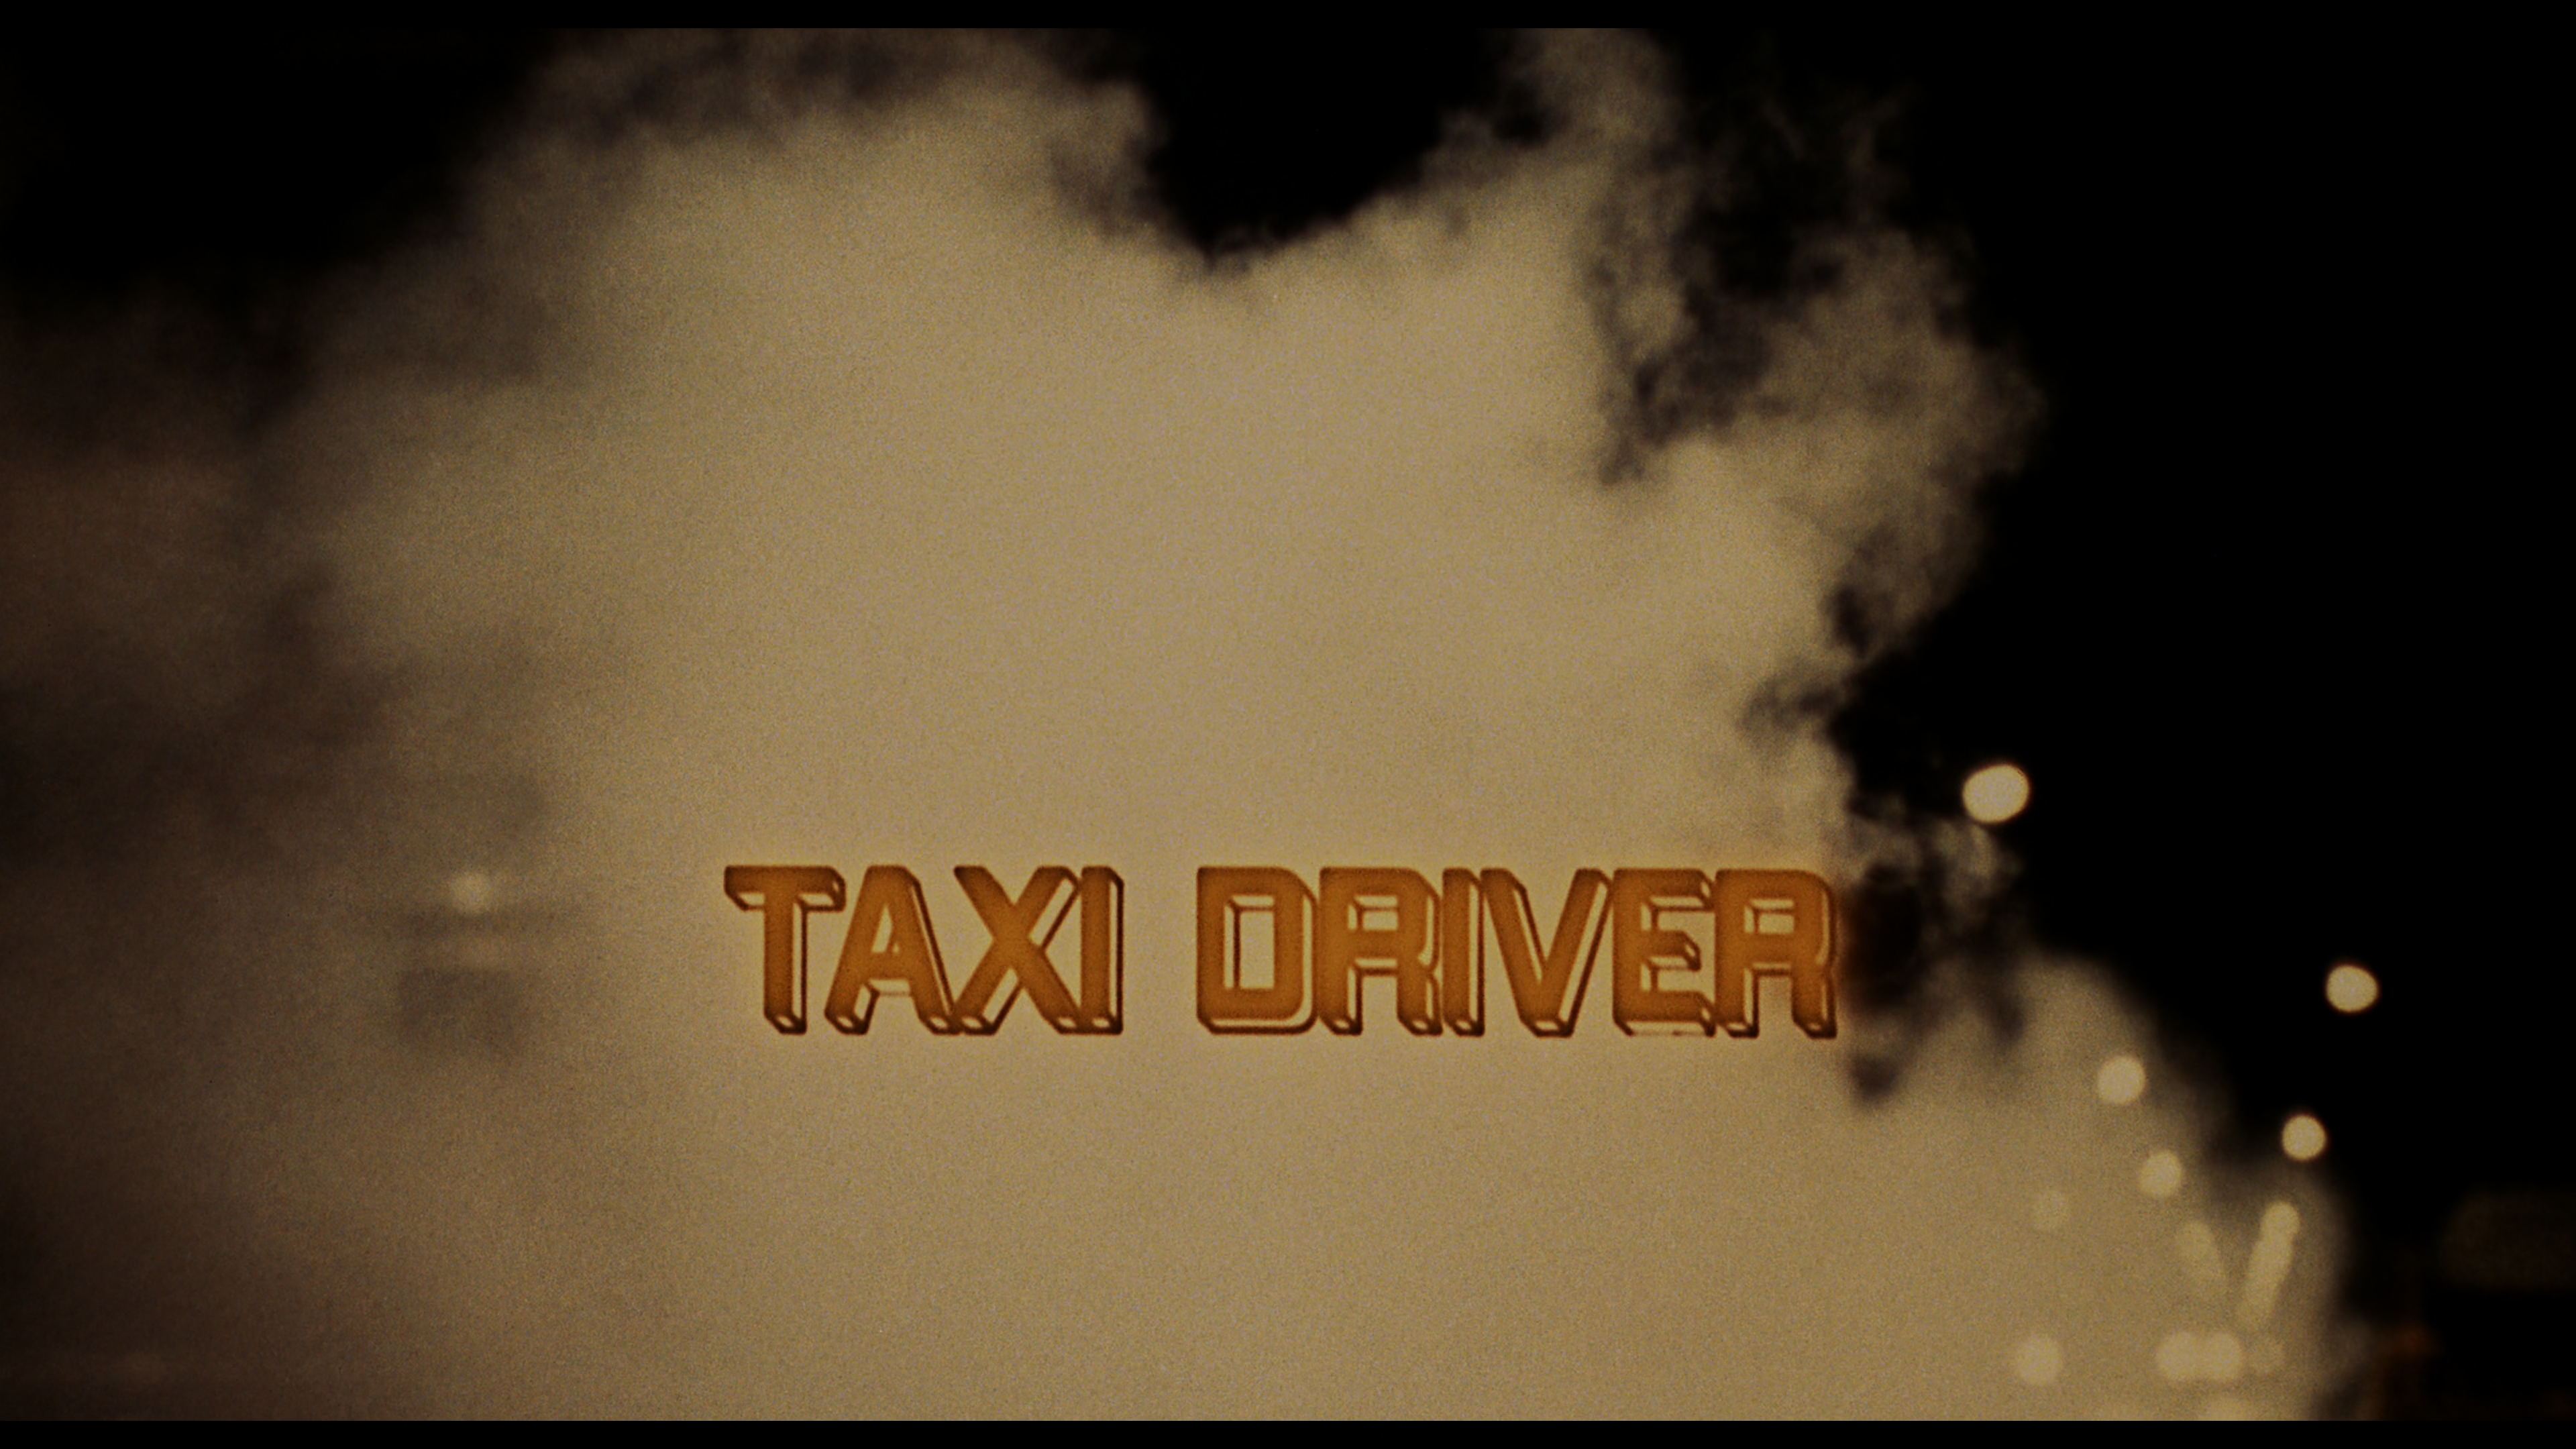 Taxi driver 4. Taxi Driver 1976. Taxi Driver 1976 титры. Картинка титры в конце.